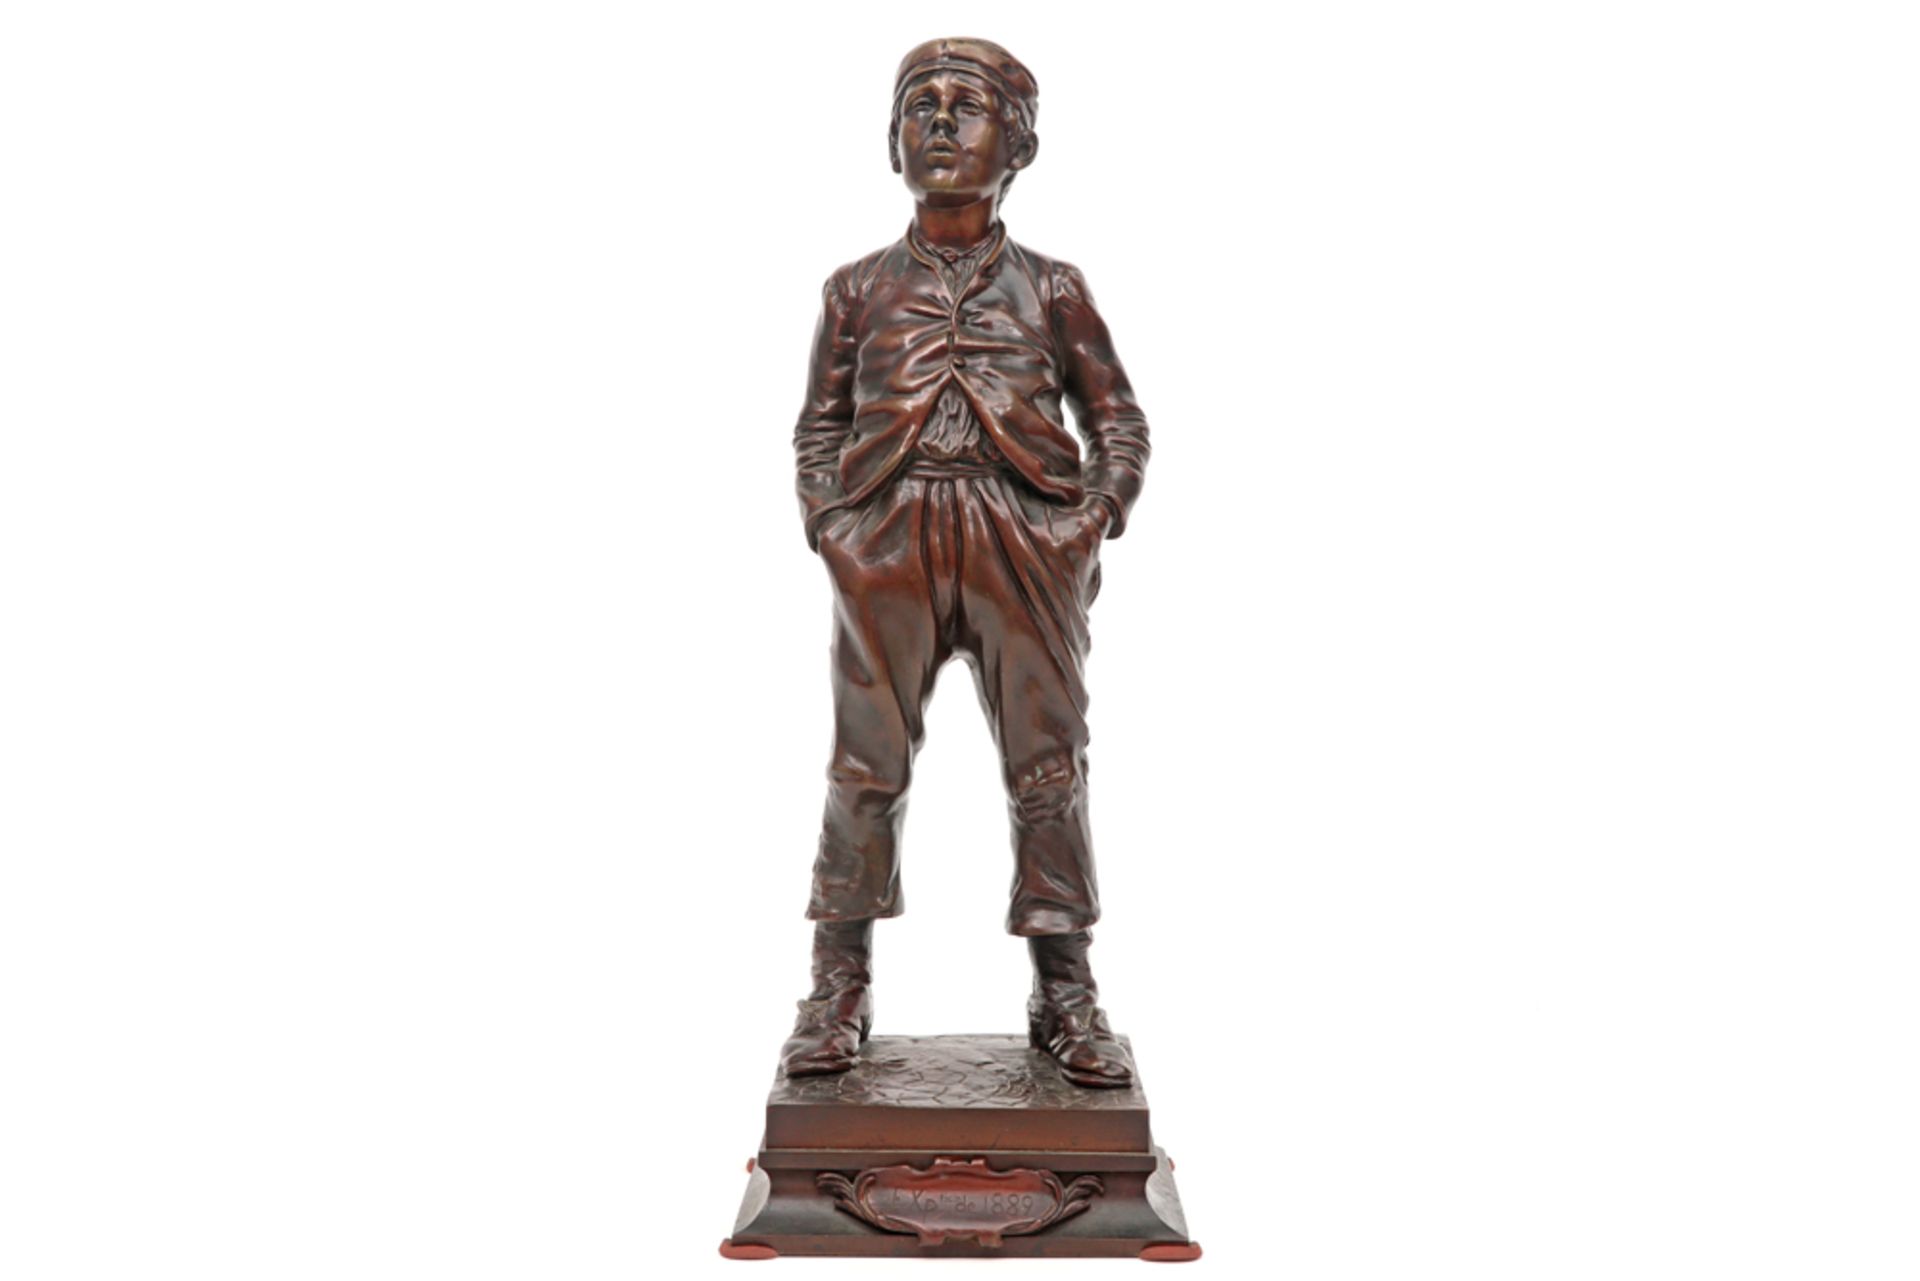 HERTZBERG HALFDAN (1857 - 1890) sculptuur in brons : "Fluitende jongen" (Le jeune mousse siffleur) d